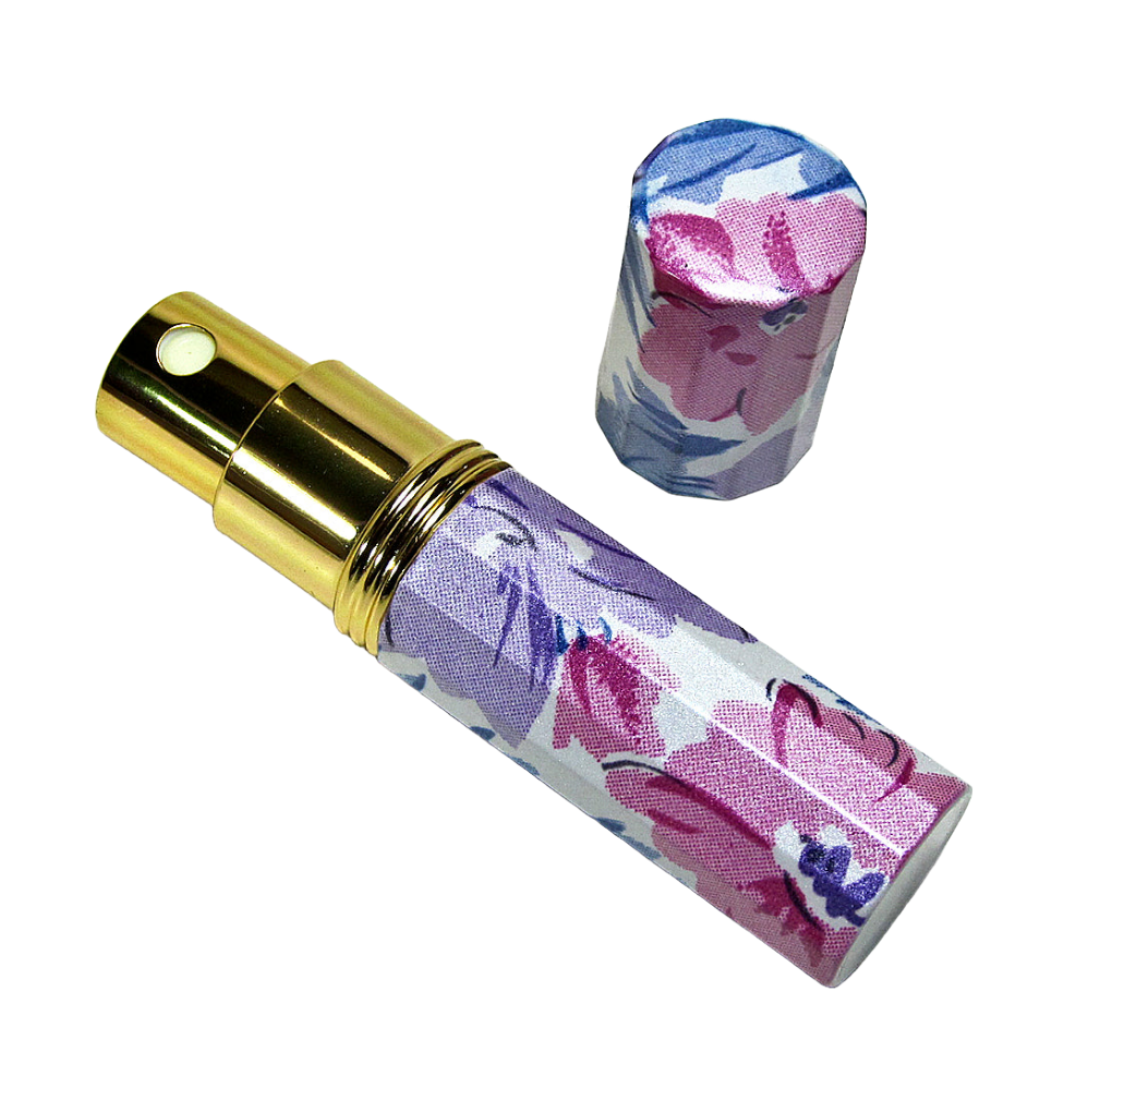 Perfume atomizer spray bottle